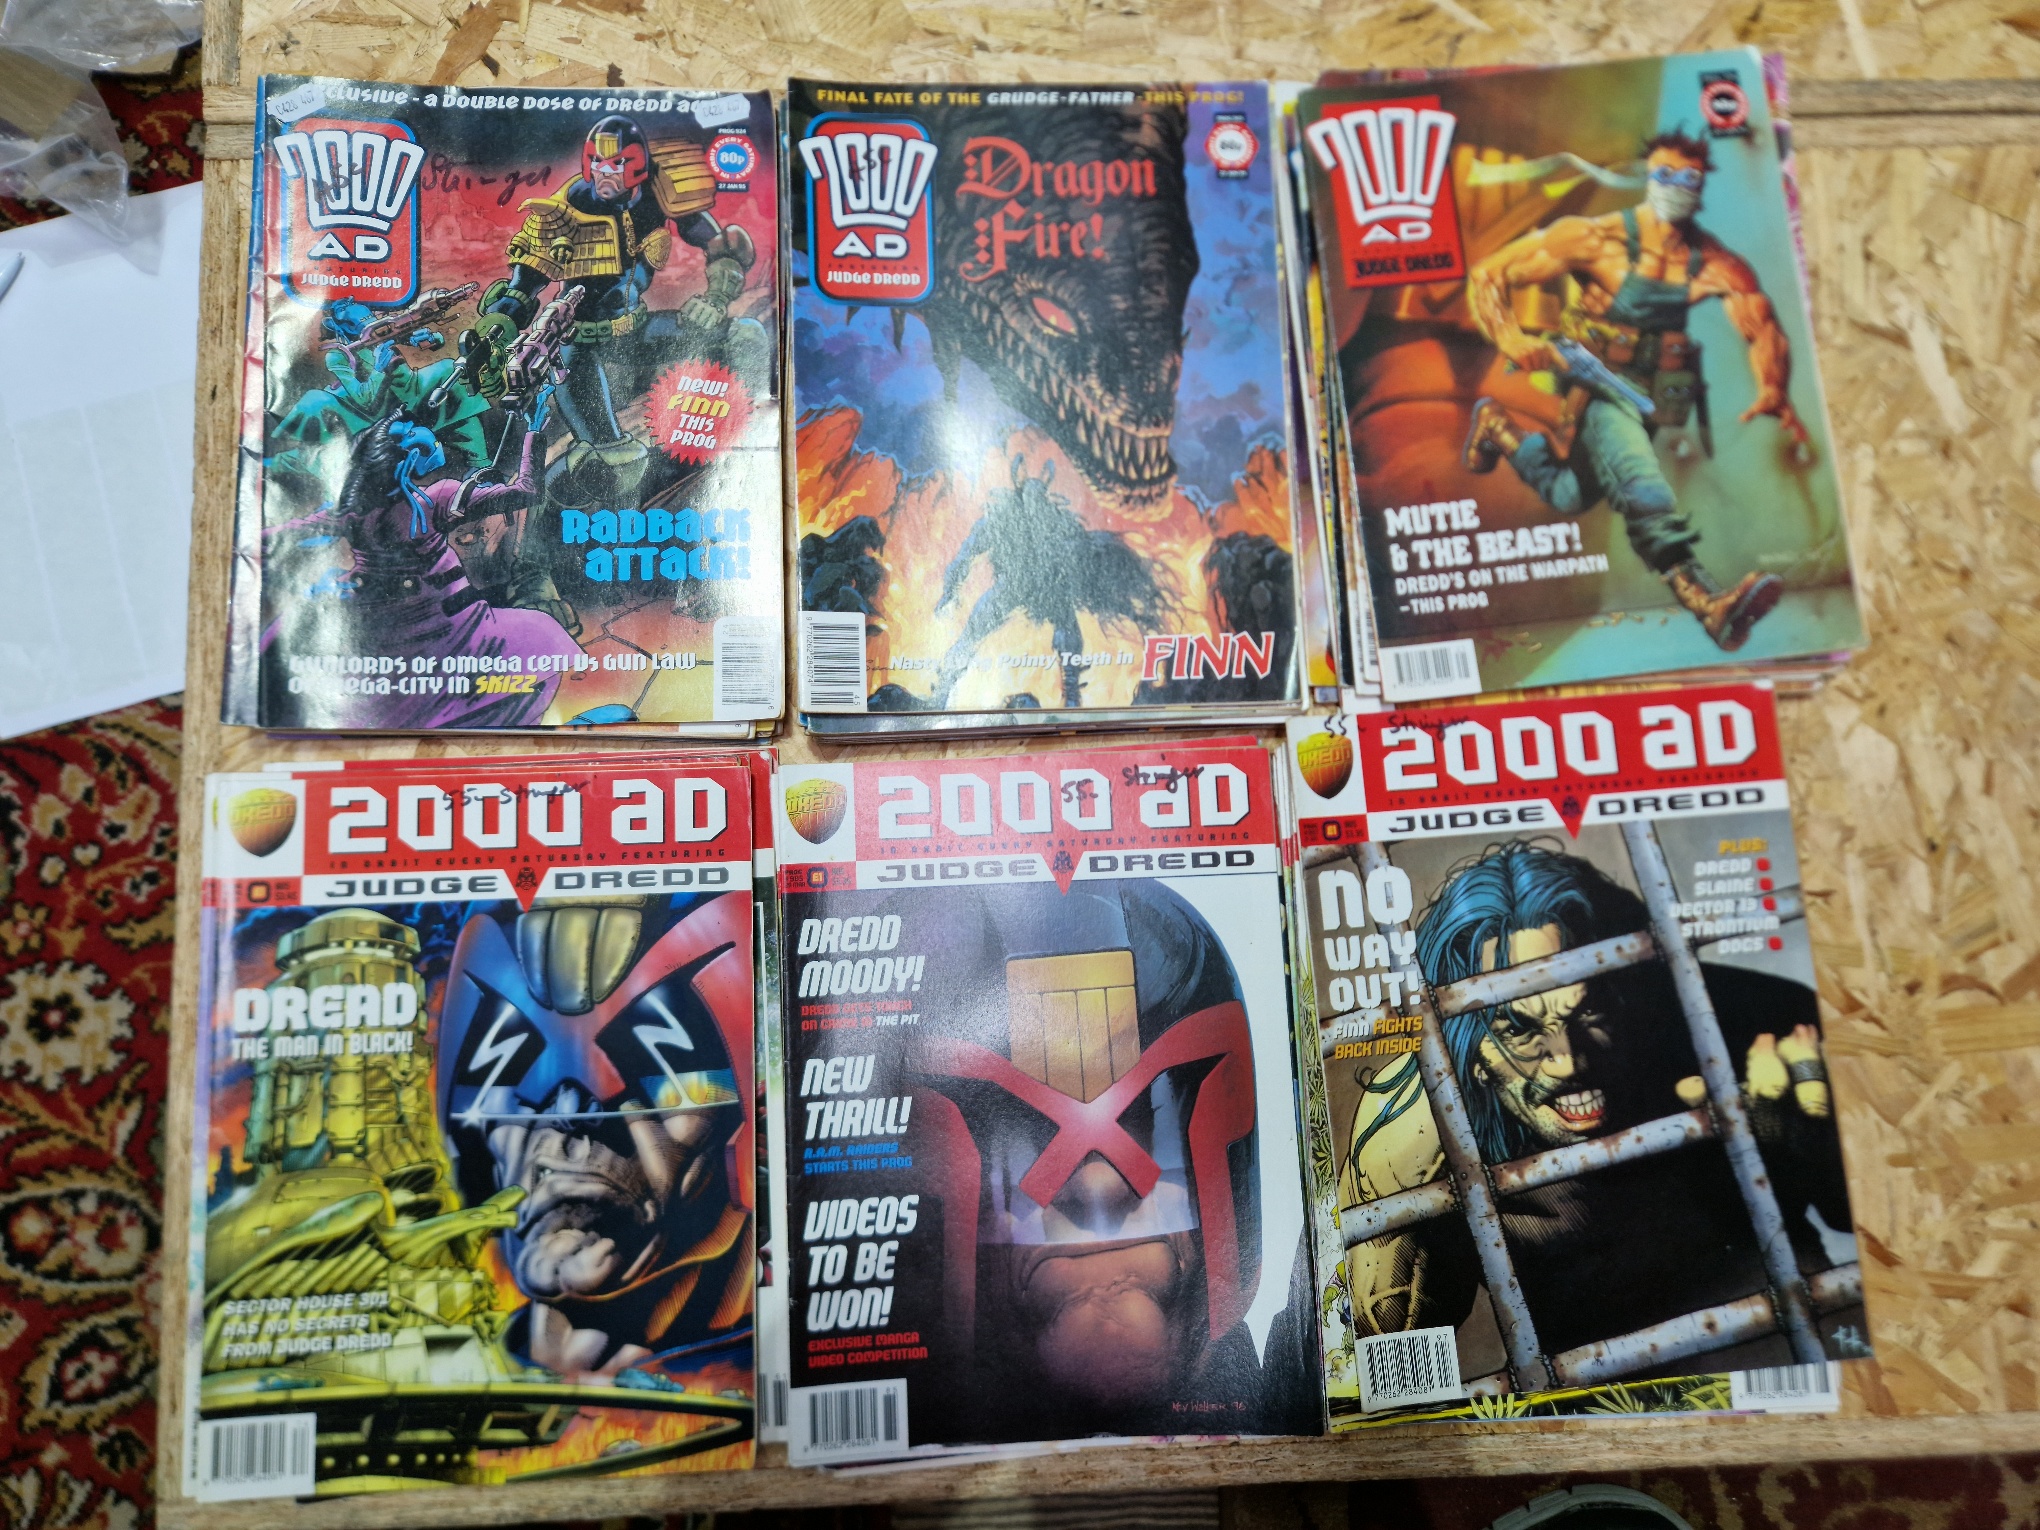 A bundle of 2000 AD "Judge Dredd" comics.